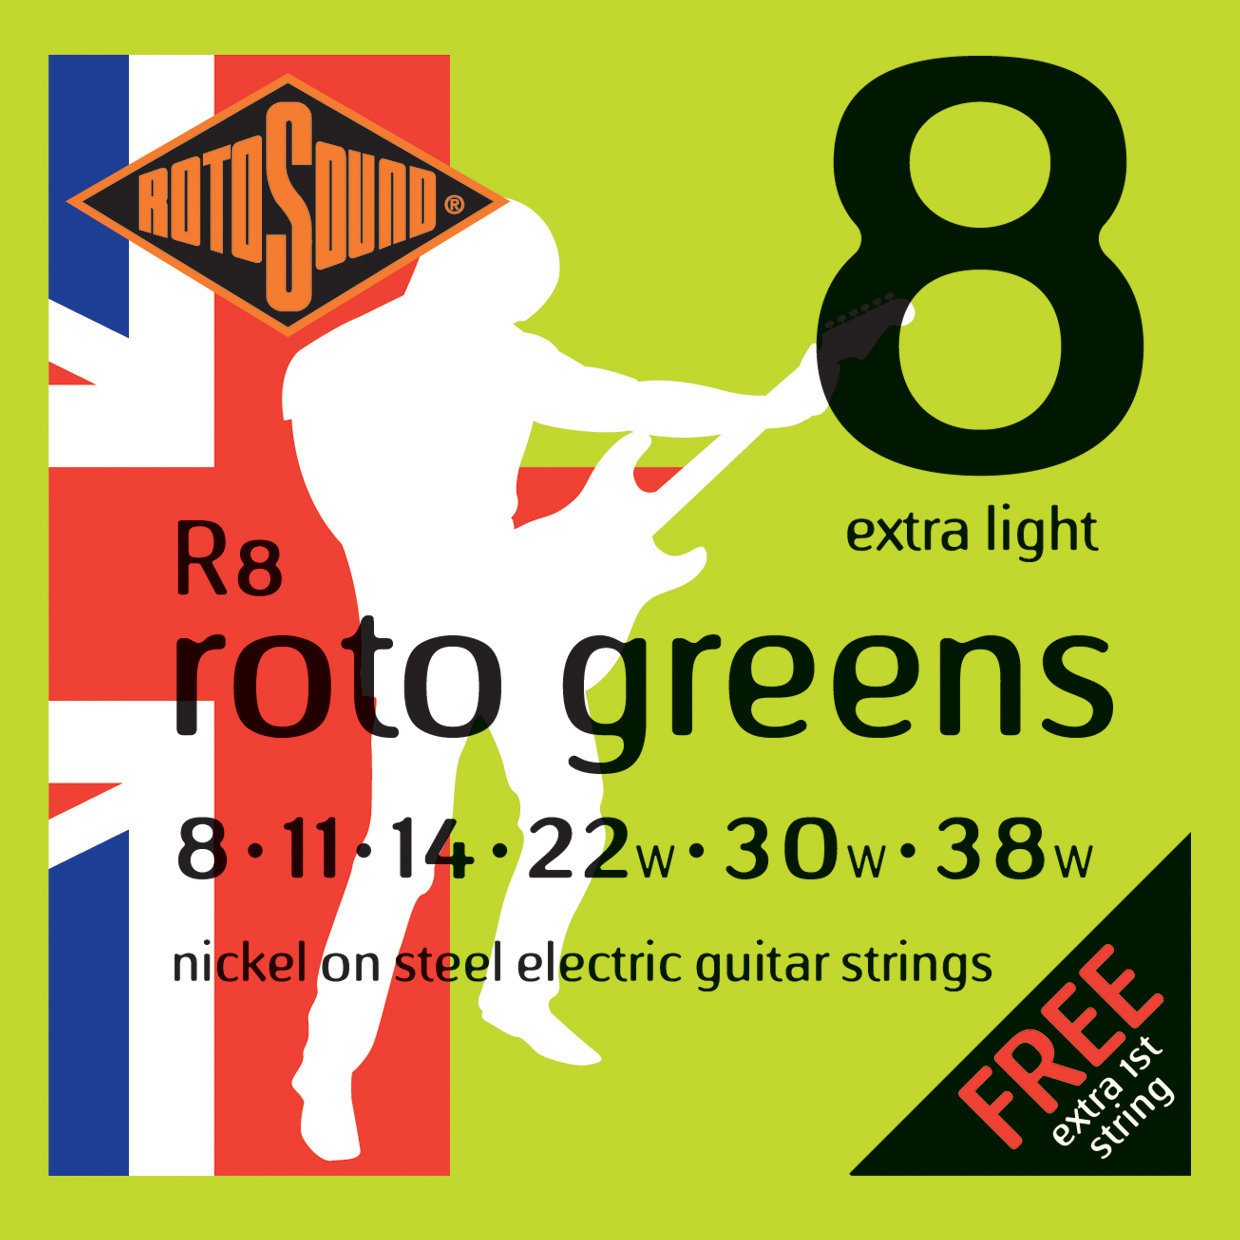 Snaren voor elektrische gitaar Rotosound R8